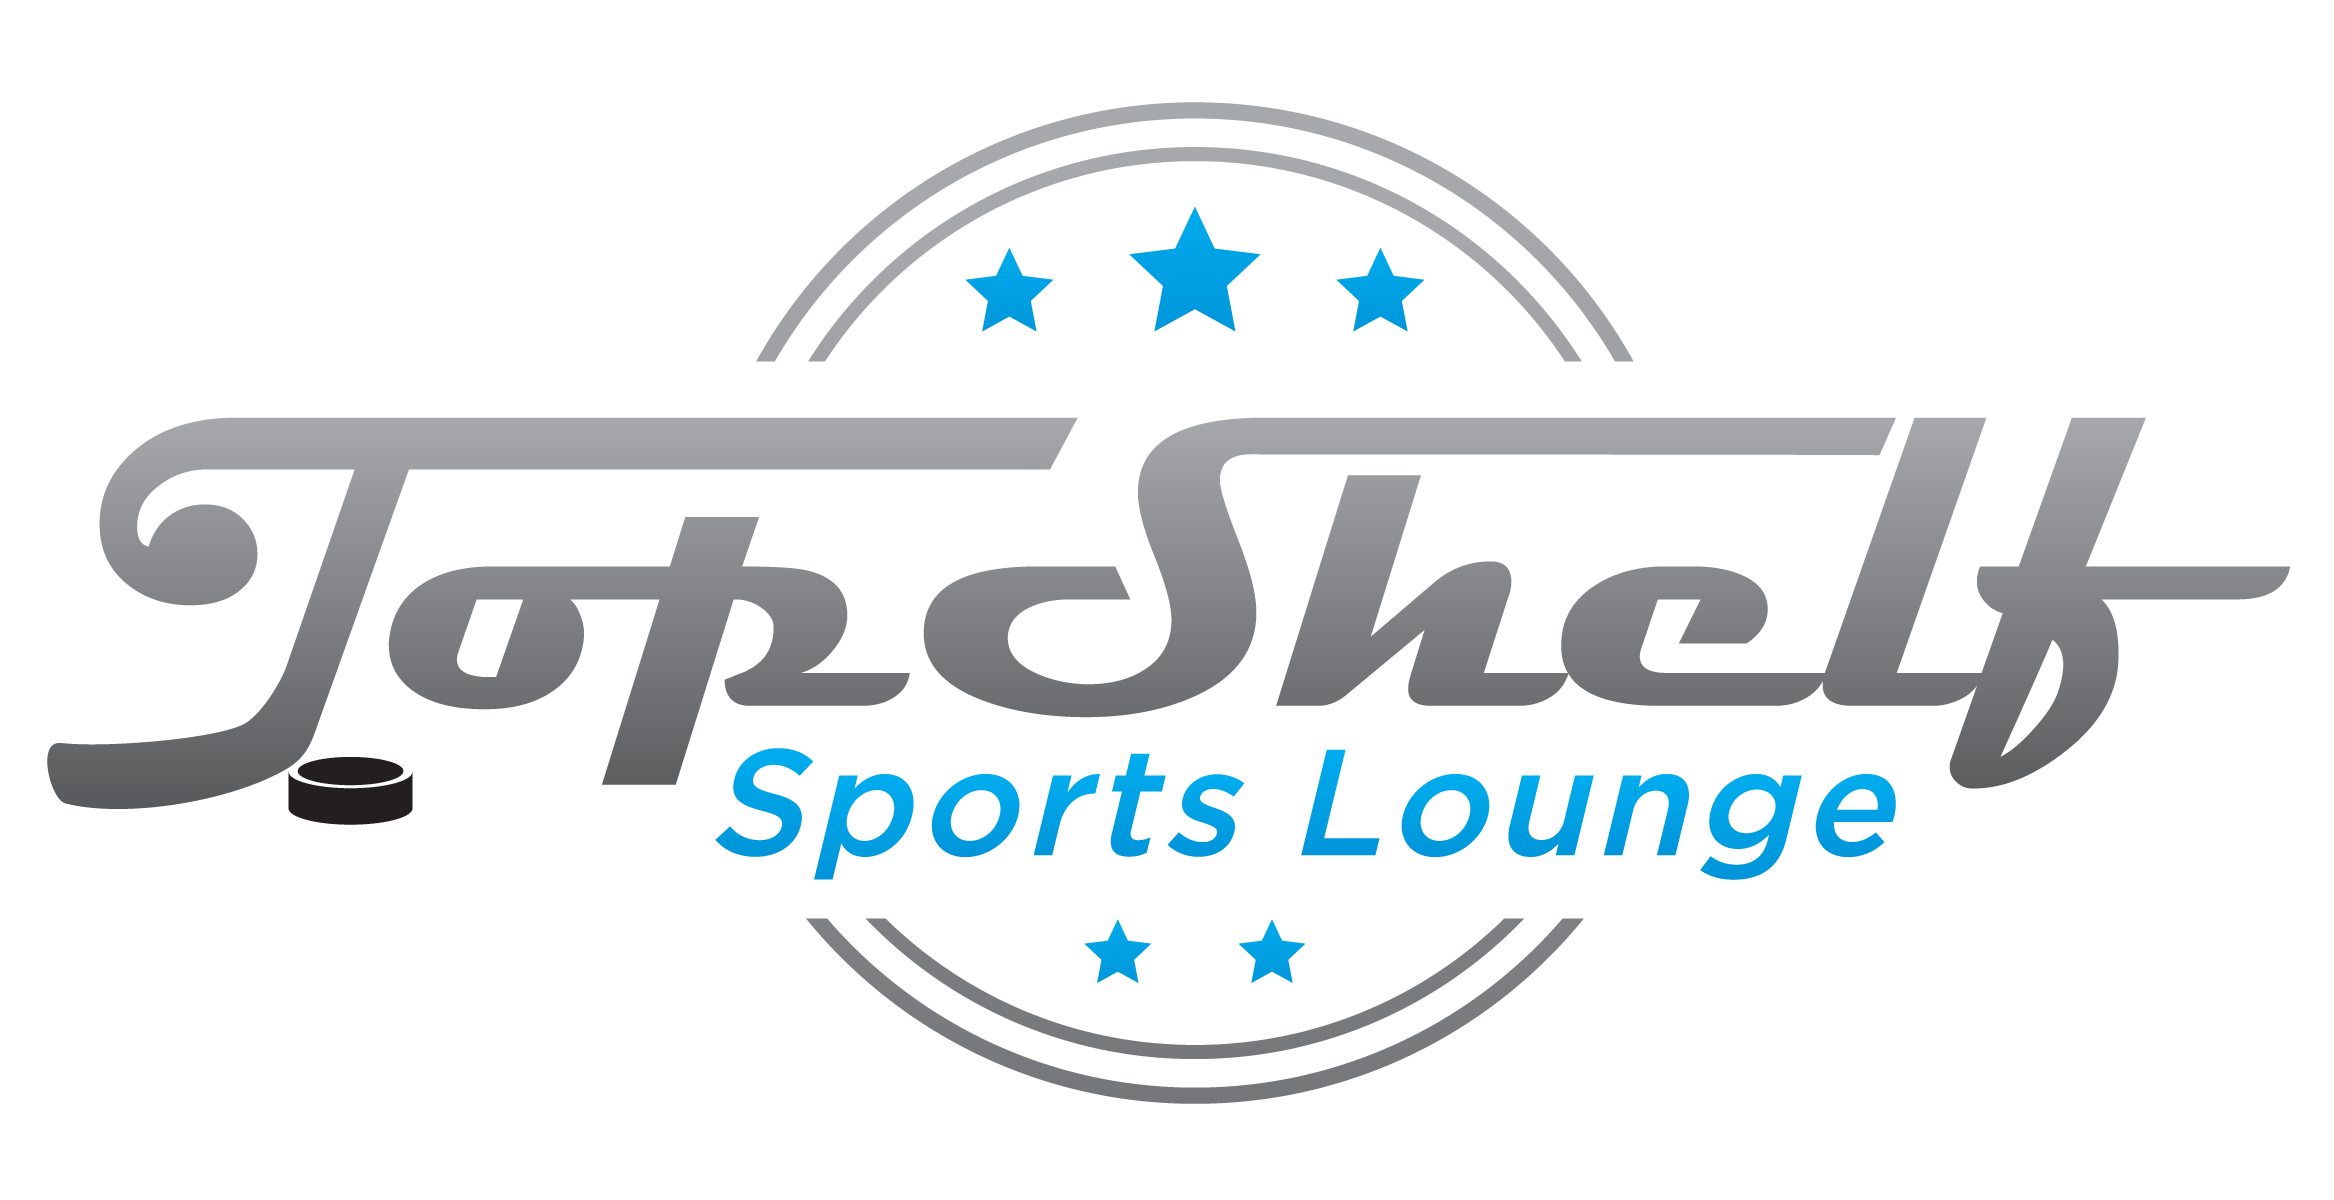 Top Shelf Sports Lounge Top Shelf Sports Lounge - 401